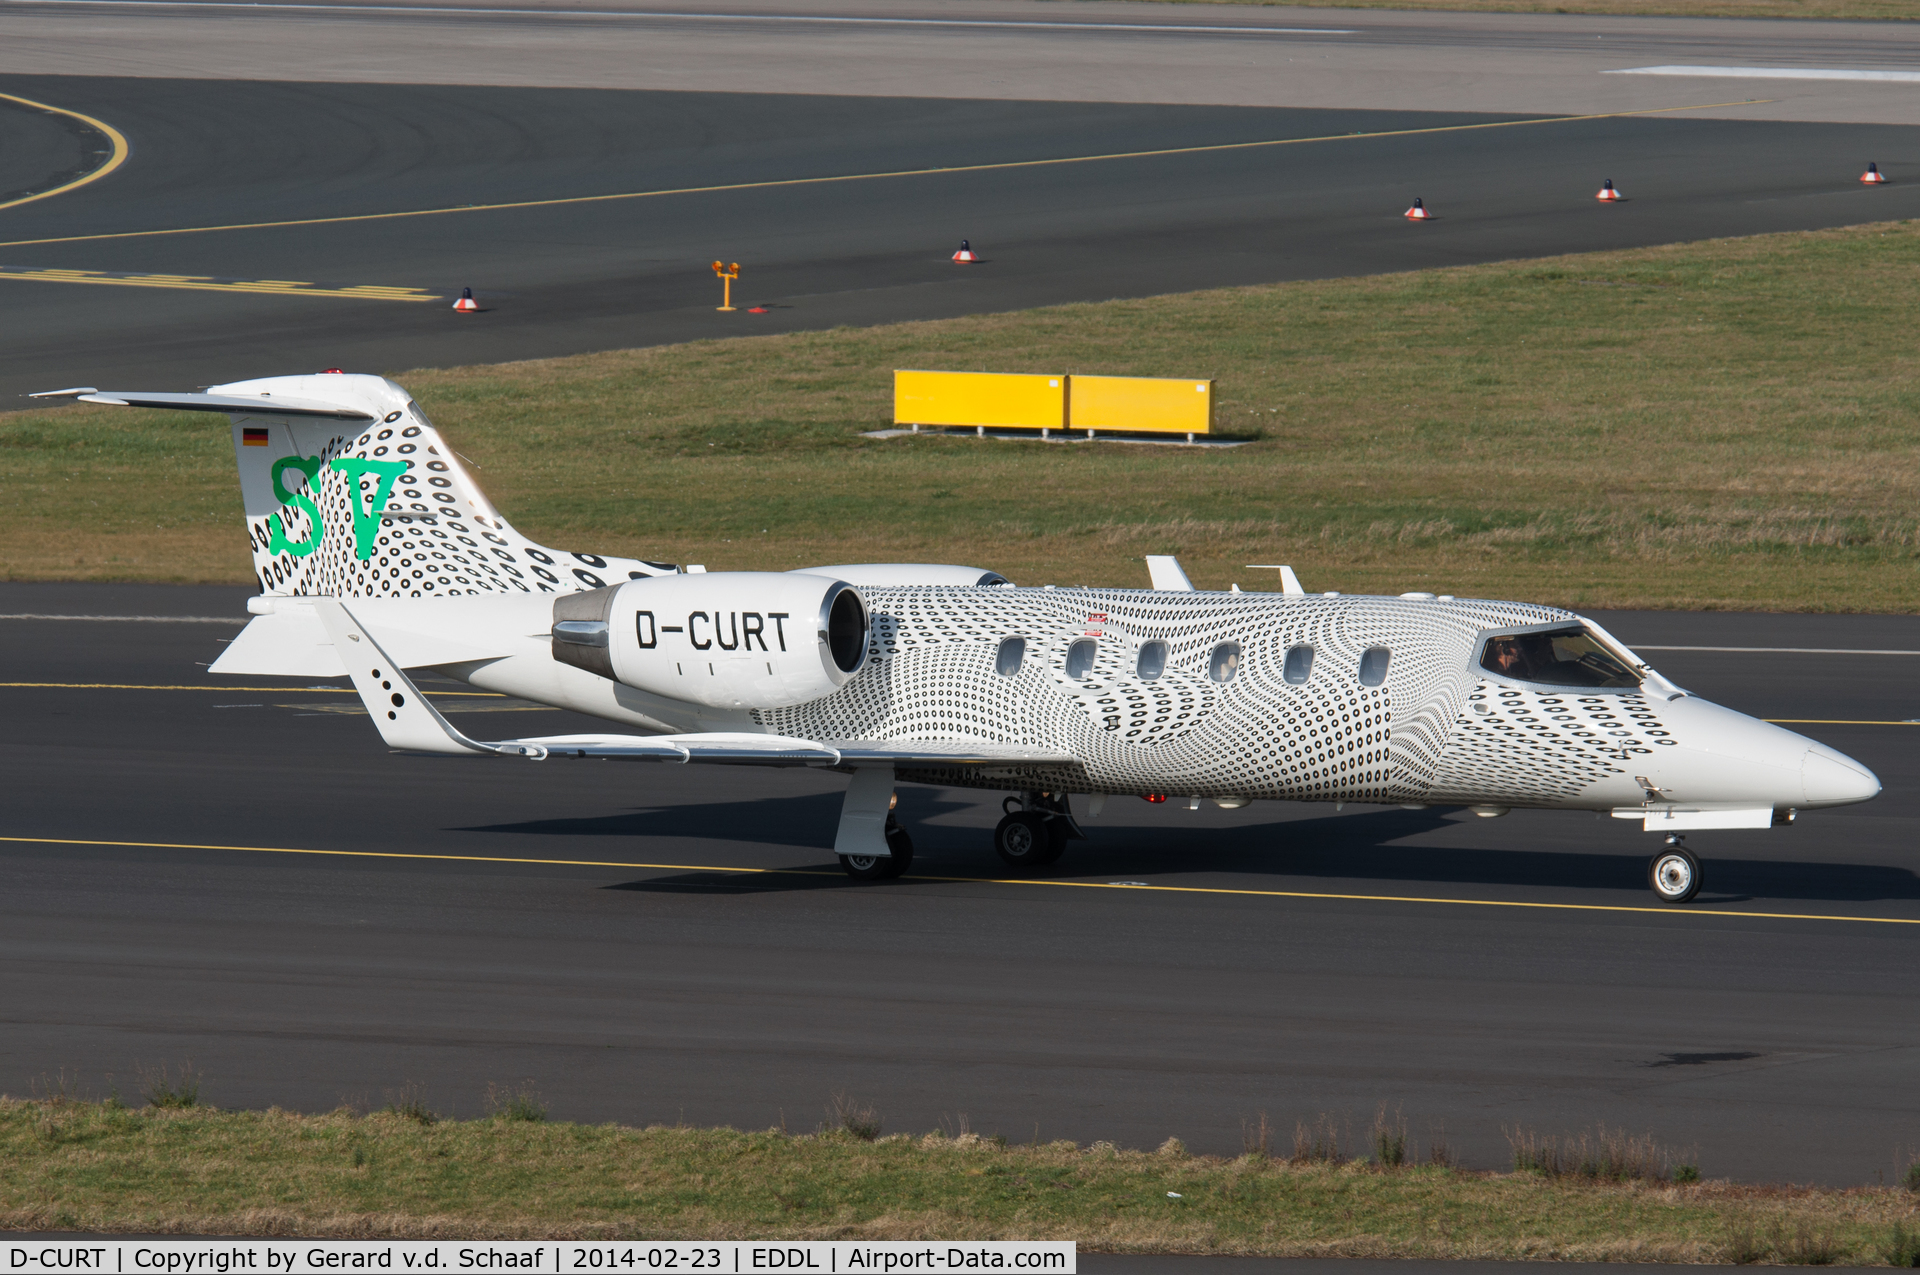 D-CURT, 1991 Learjet 31A C/N 31A-042, Düsseldorf, February 2014